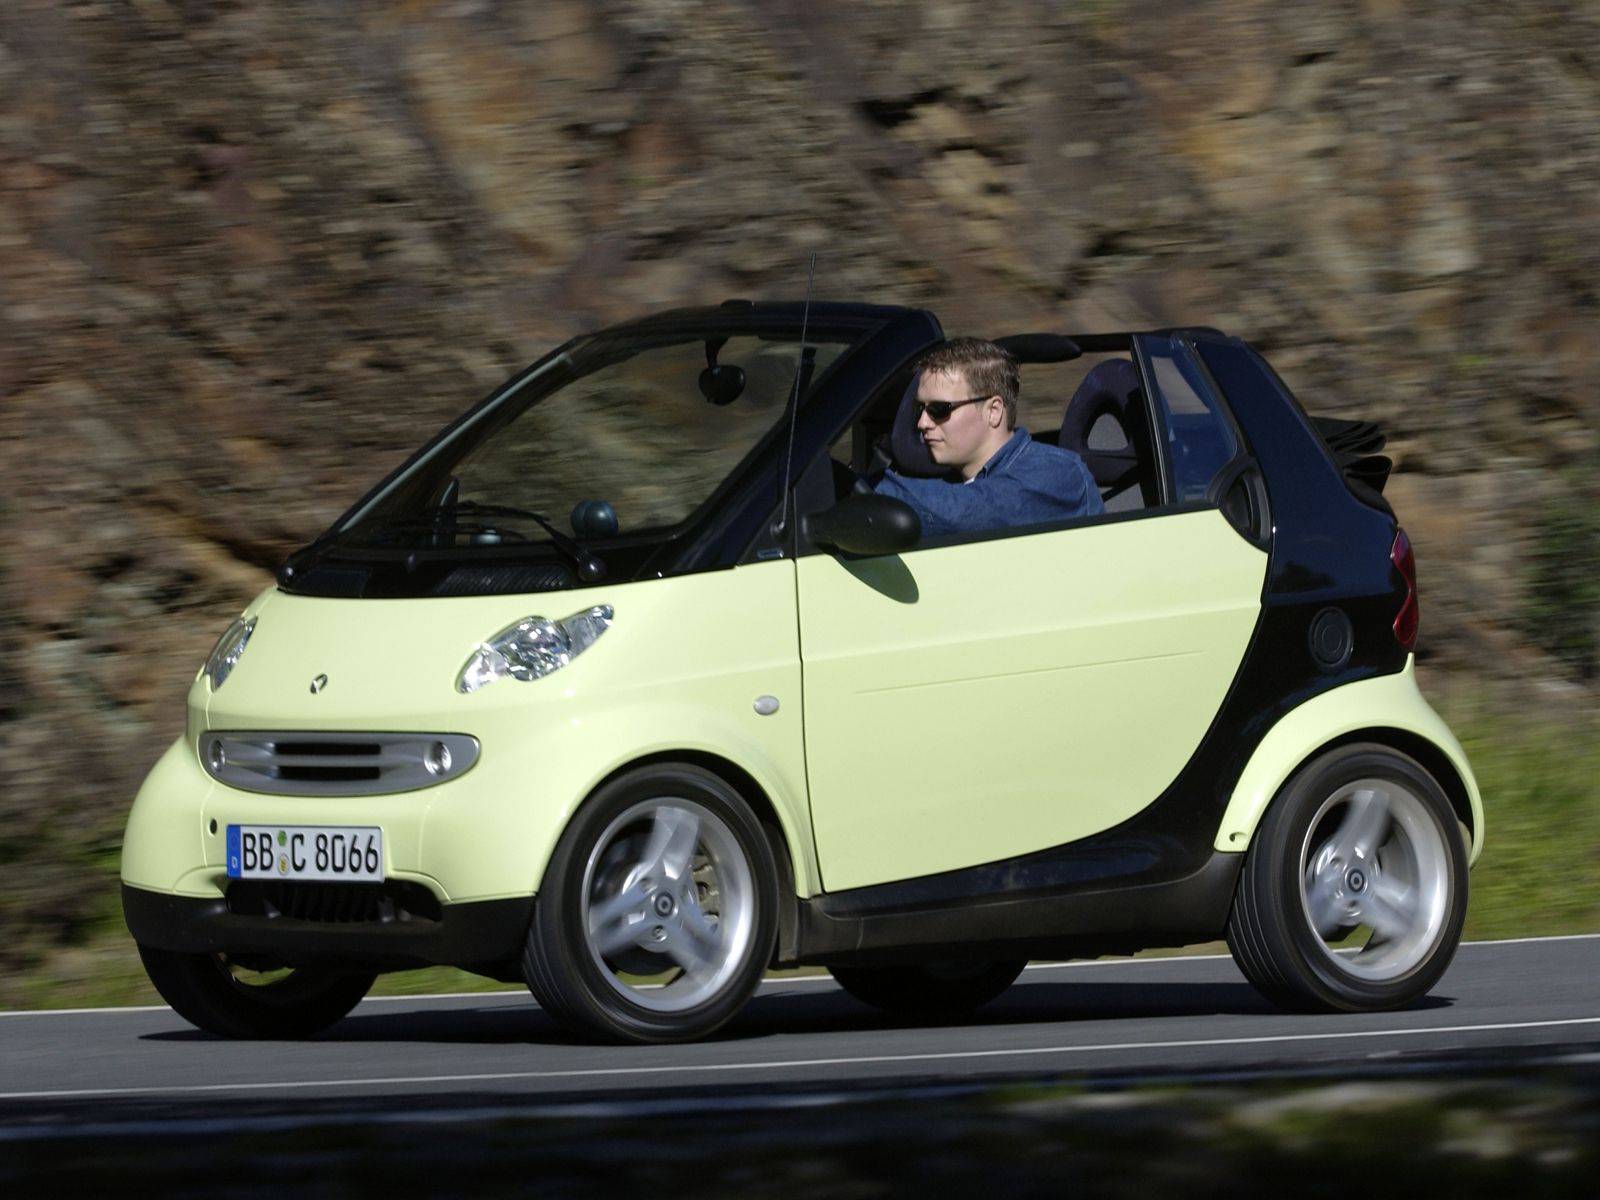 Автомобиль smart city cabrio и coupe, обзор, технические характеристики, видео